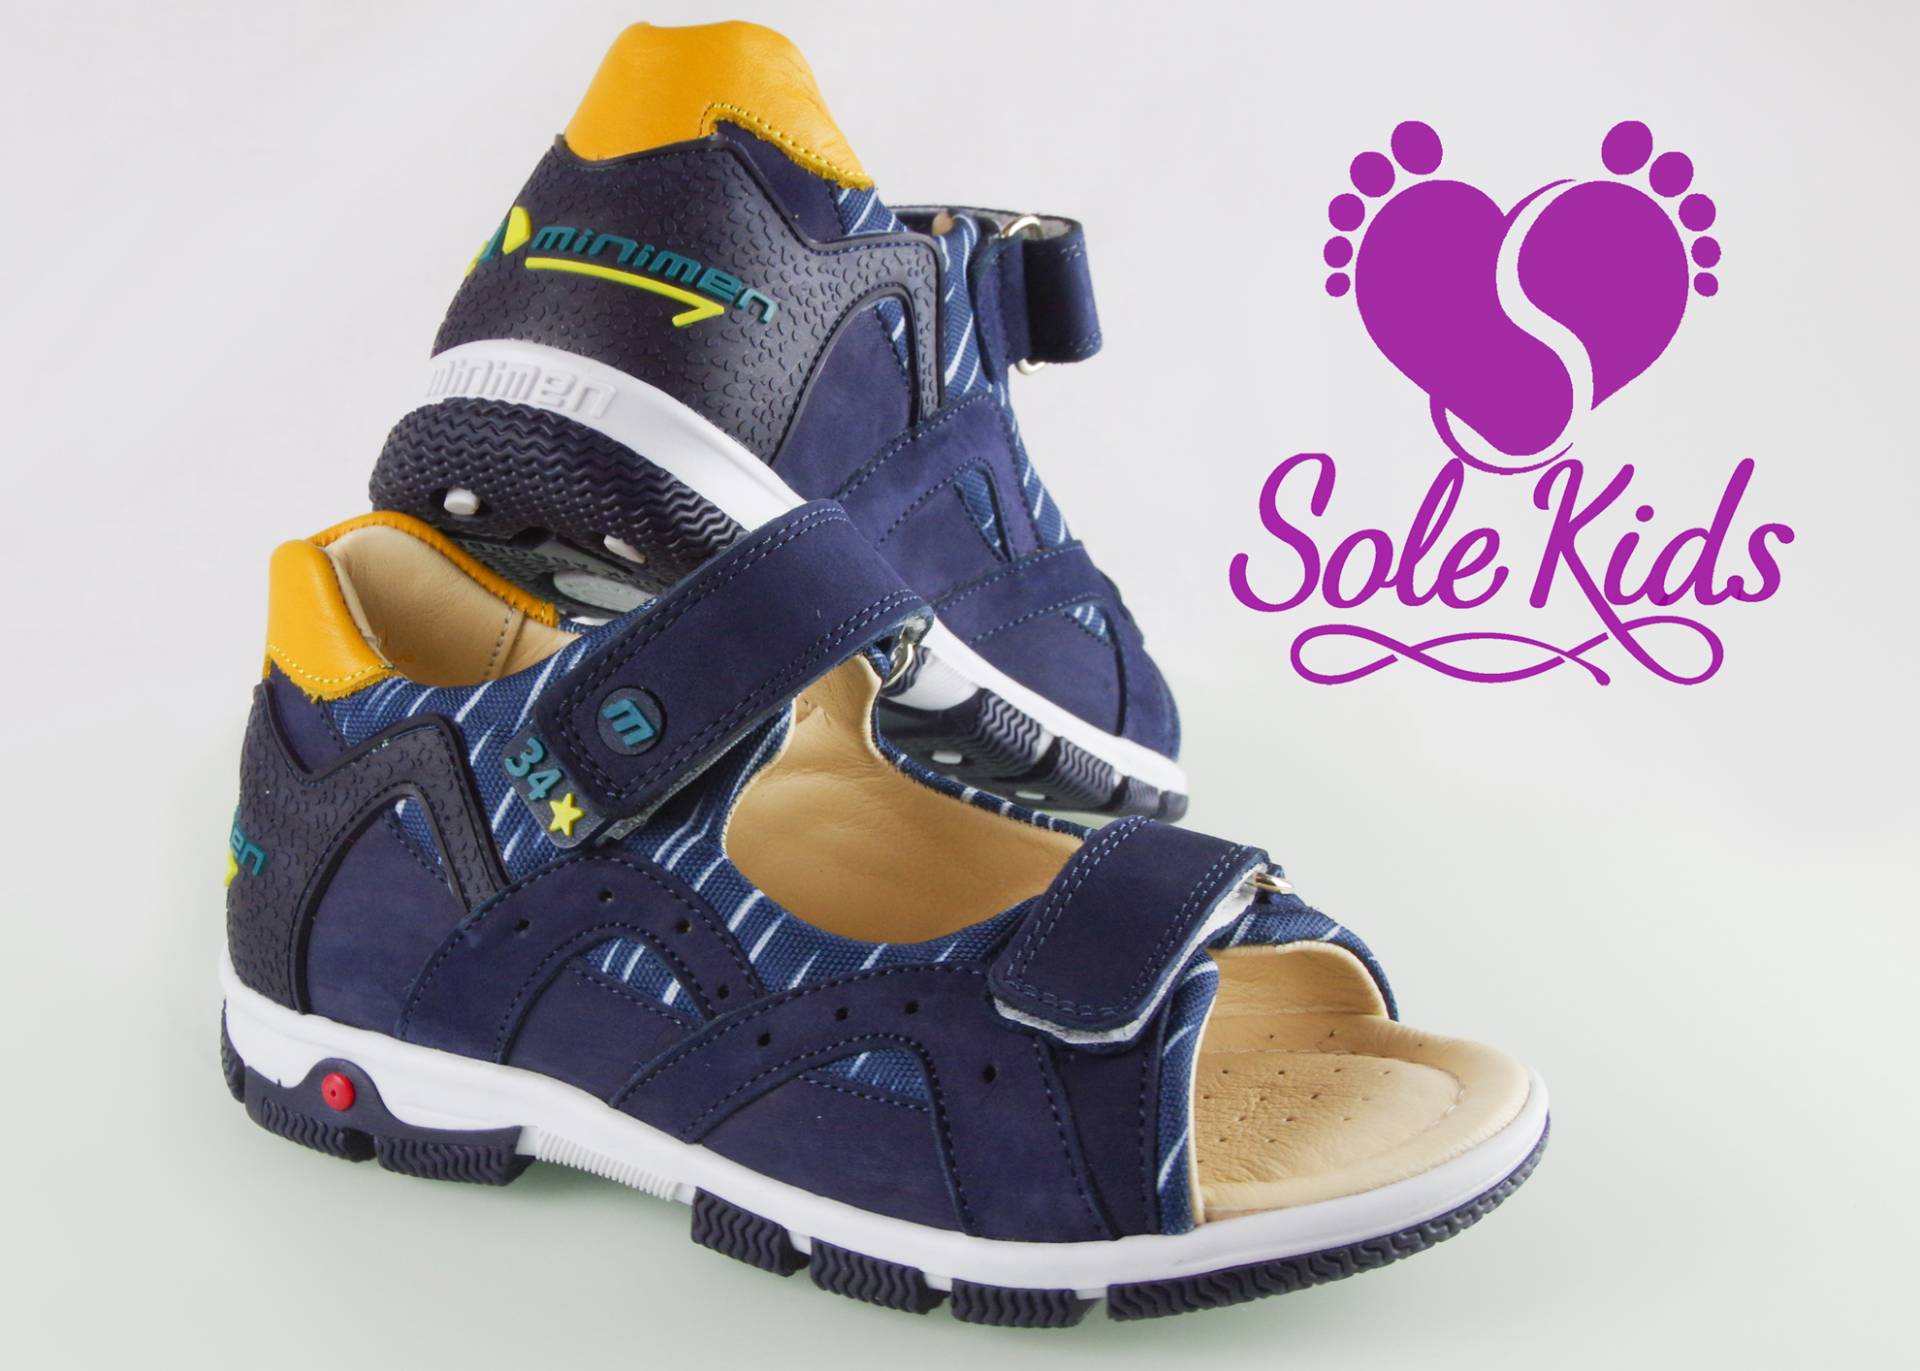 Фабричная обувь для мальчиков в магазине Sole Kids